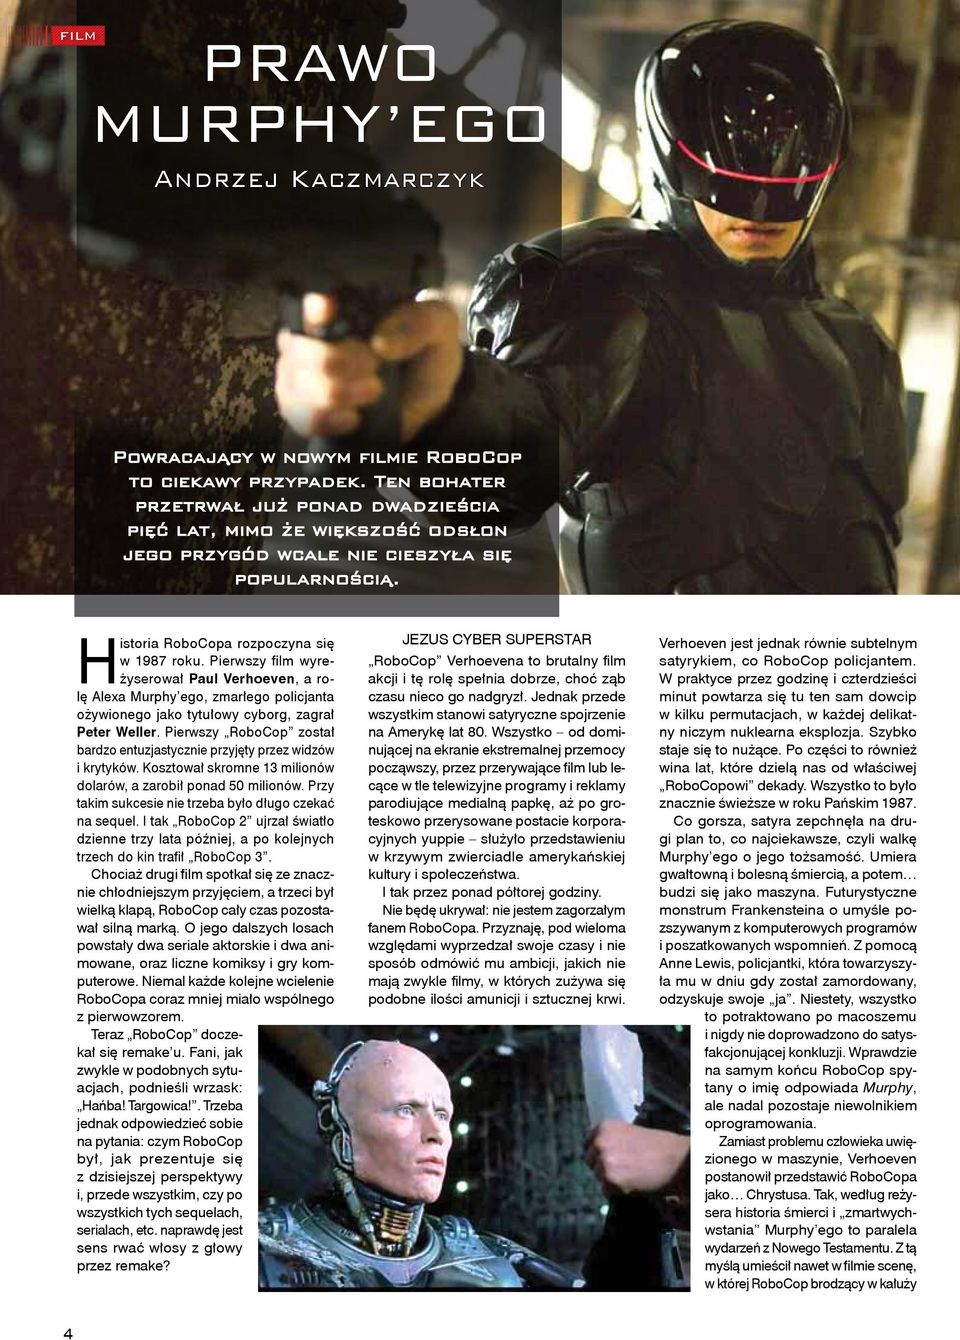 Pierwszy film wyreżyserował Paul Verhoeven, a rolę Alexa Murphy ego, zmarłego policjanta ożywionego jako tytułowy cyborg, zagrał Peter Weller.